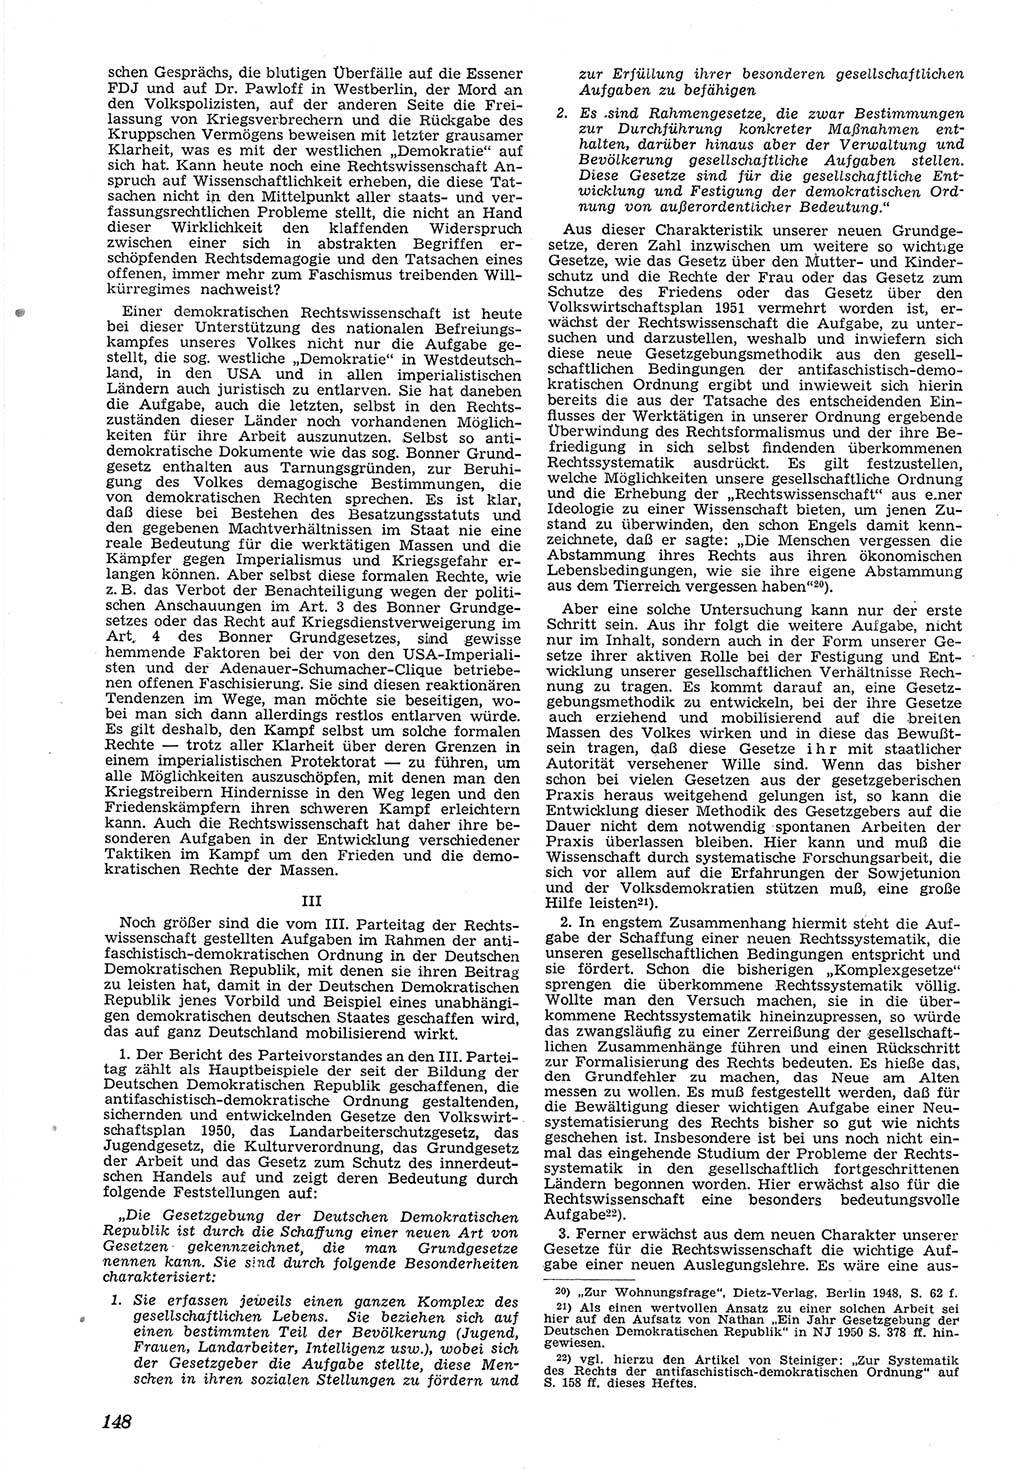 Neue Justiz (NJ), Zeitschrift für Recht und Rechtswissenschaft [Deutsche Demokratische Republik (DDR)], 5. Jahrgang 1951, Seite 148 (NJ DDR 1951, S. 148)